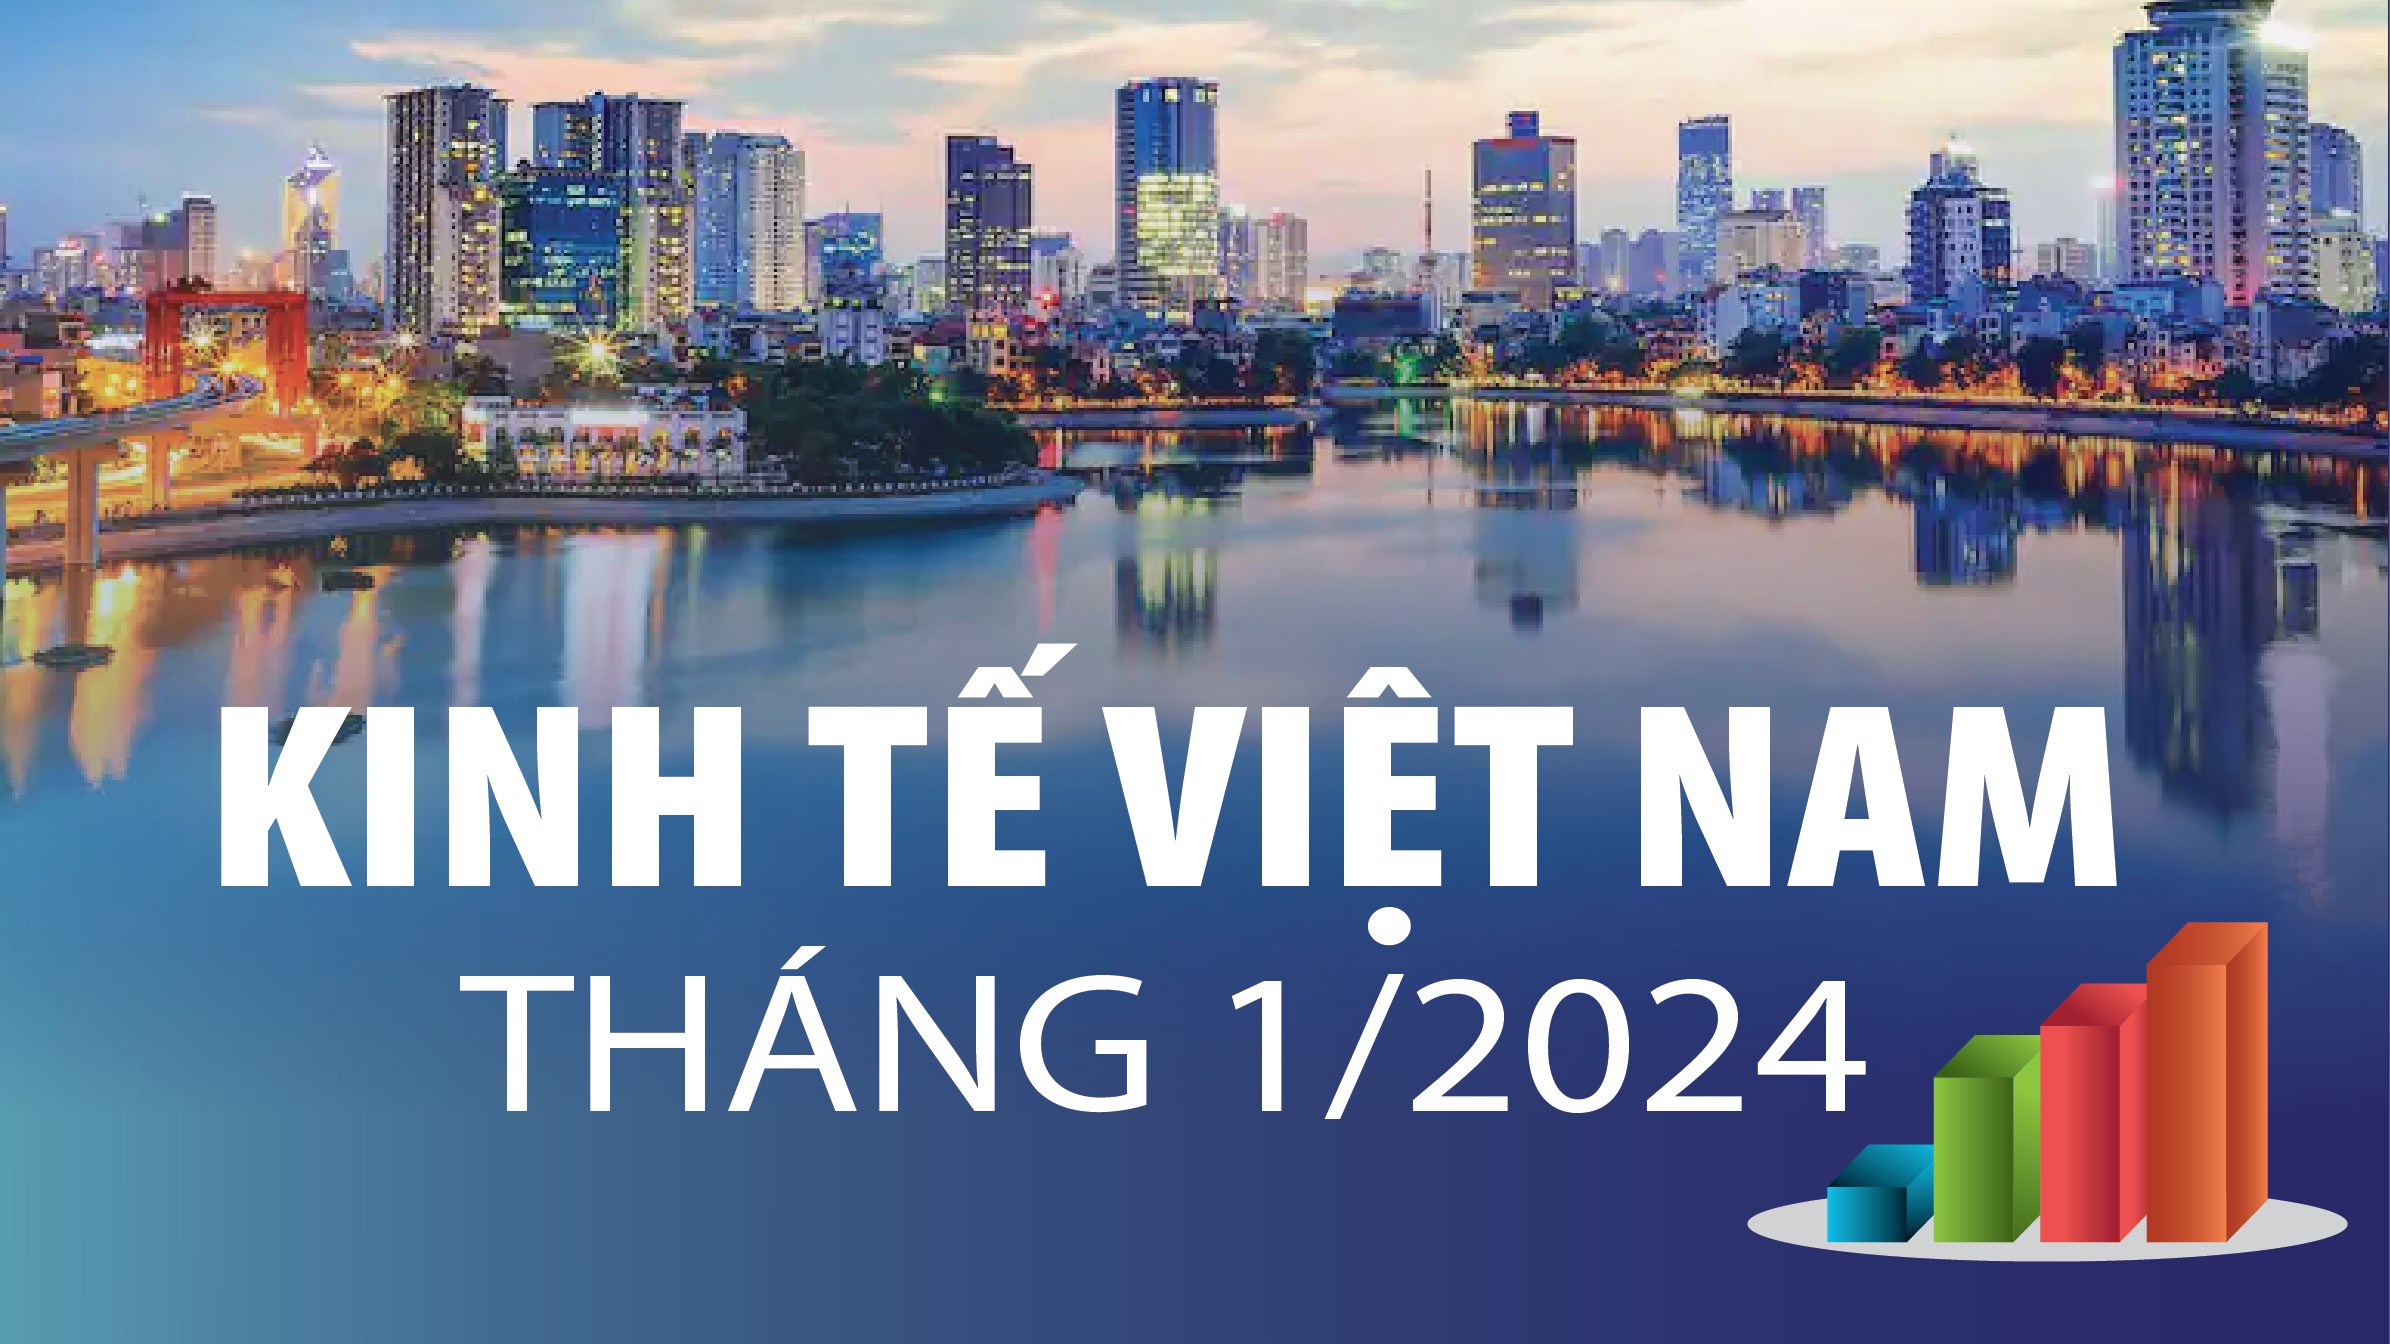 Toàn cảnh kinh tế Việt Nam tháng 1/2024